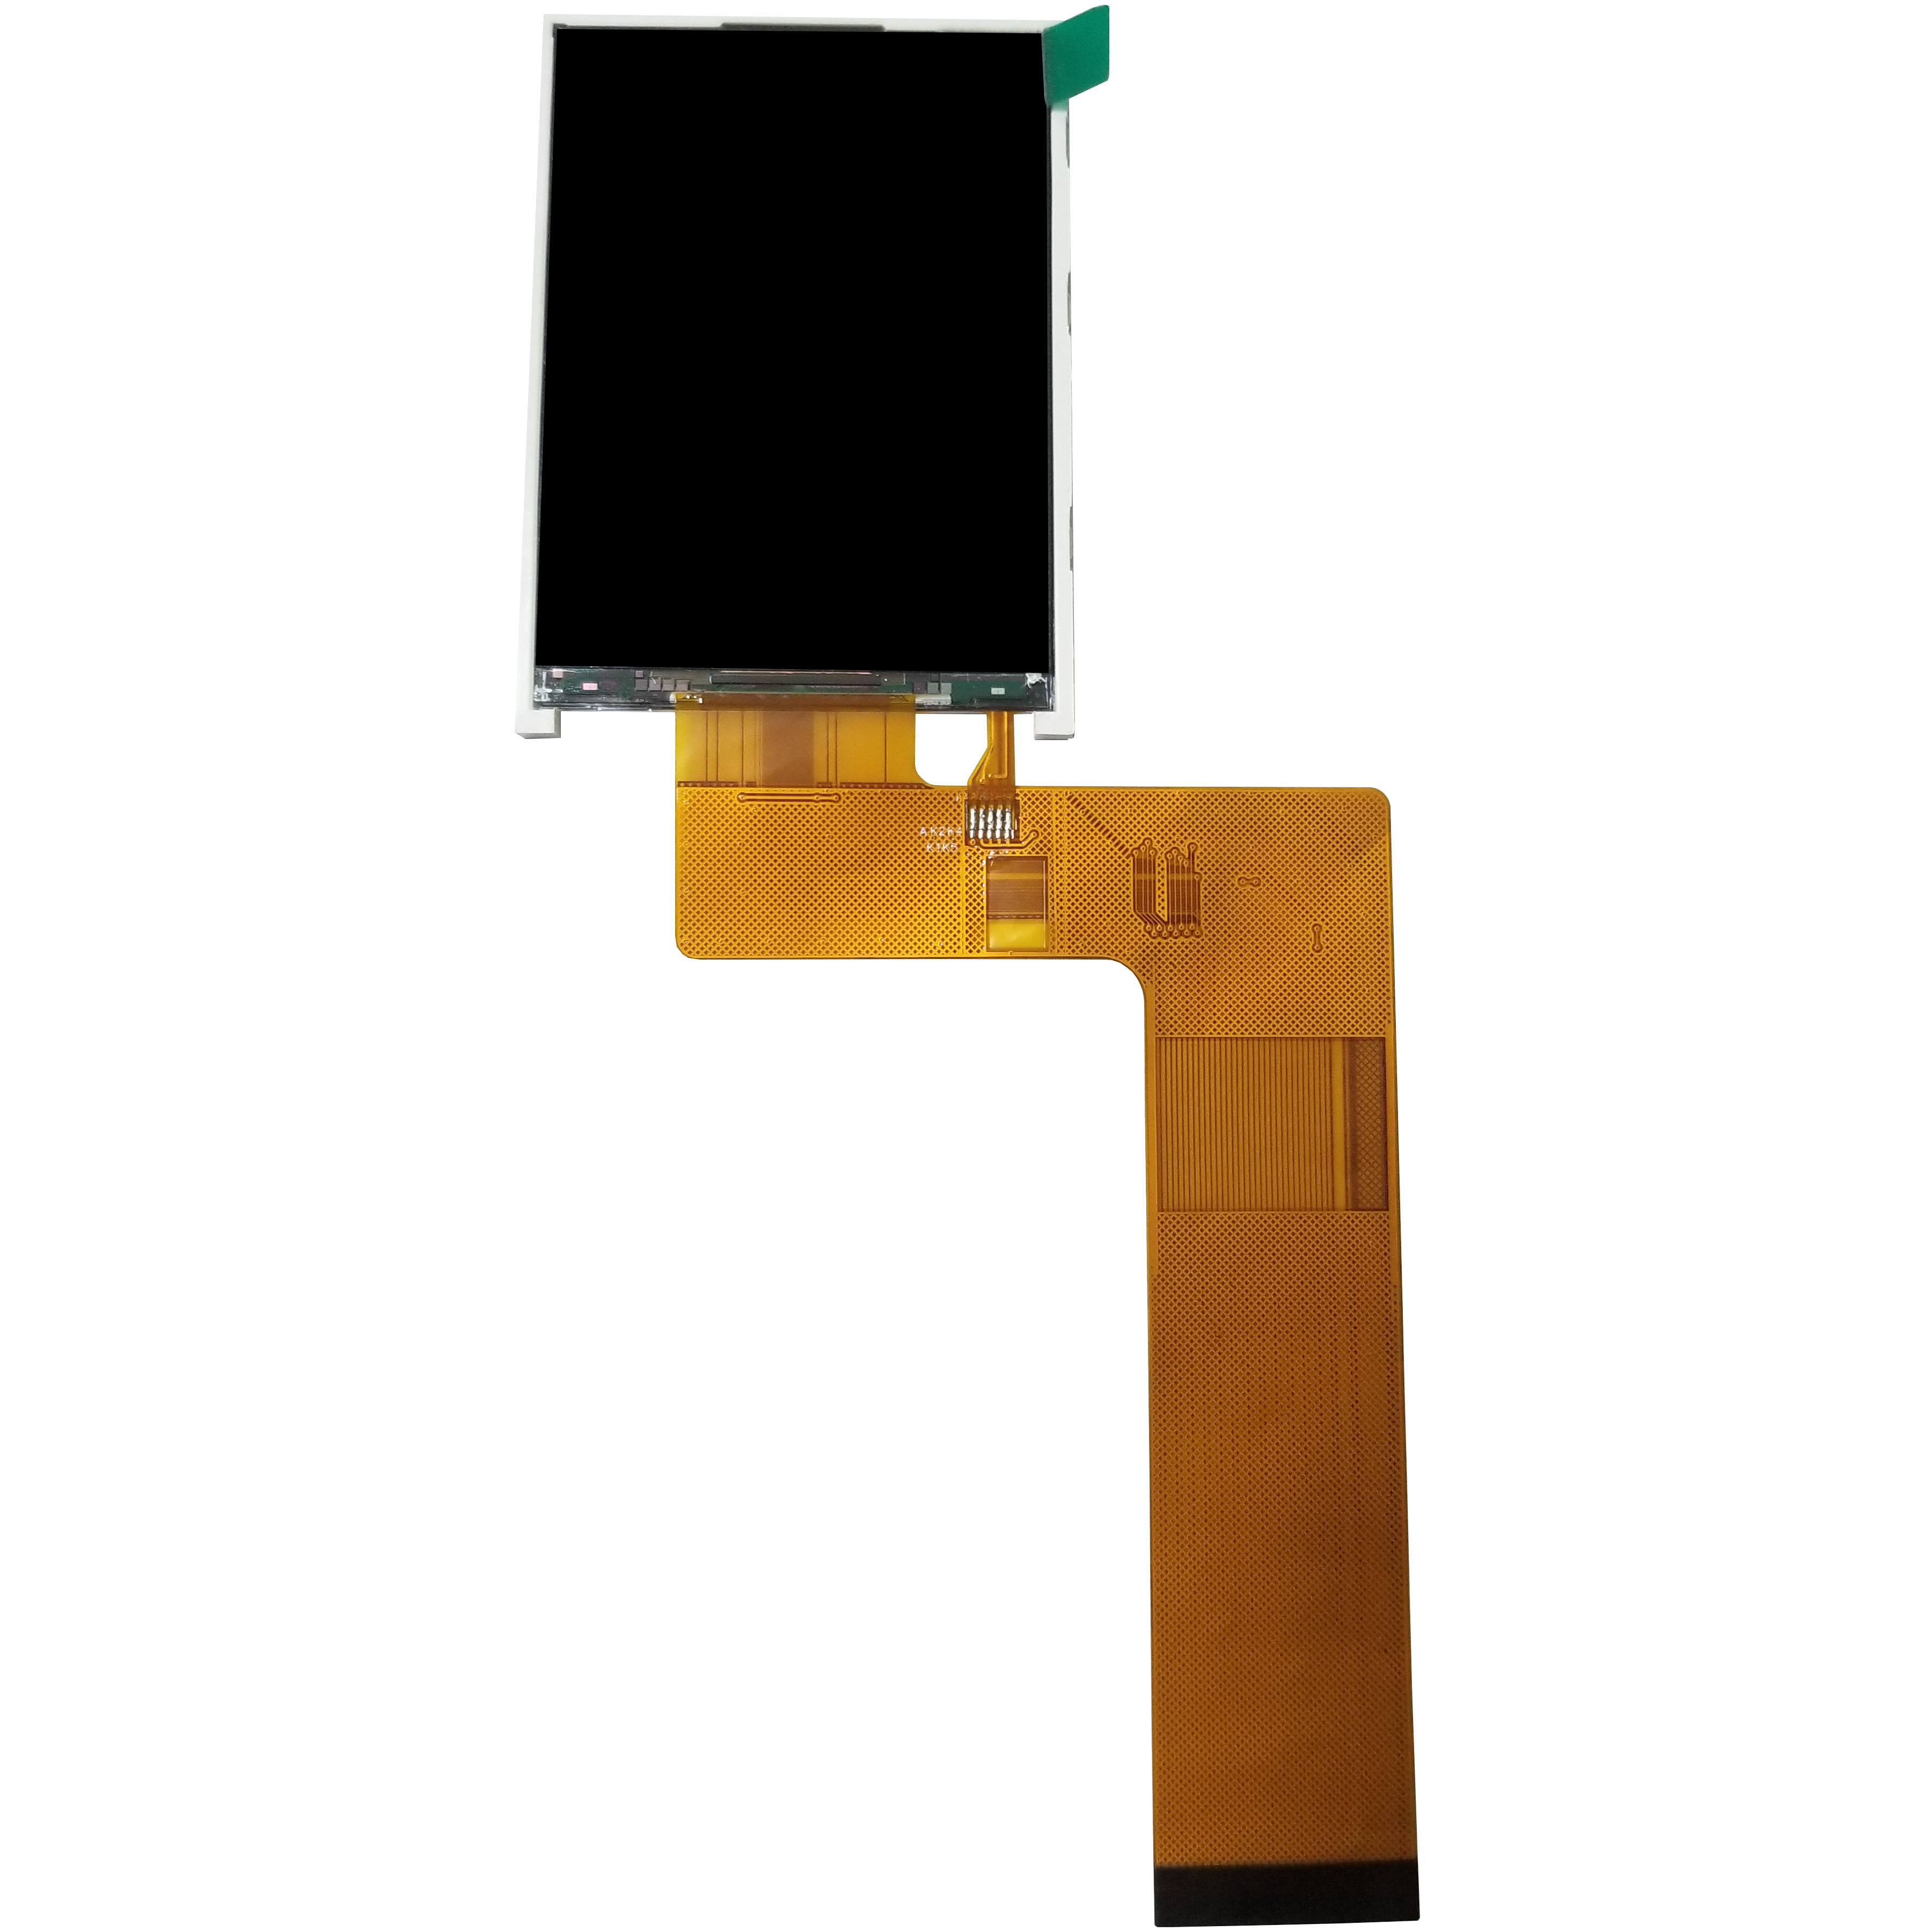 يعرض ST7789V 2.8 بوصة TFT LCD